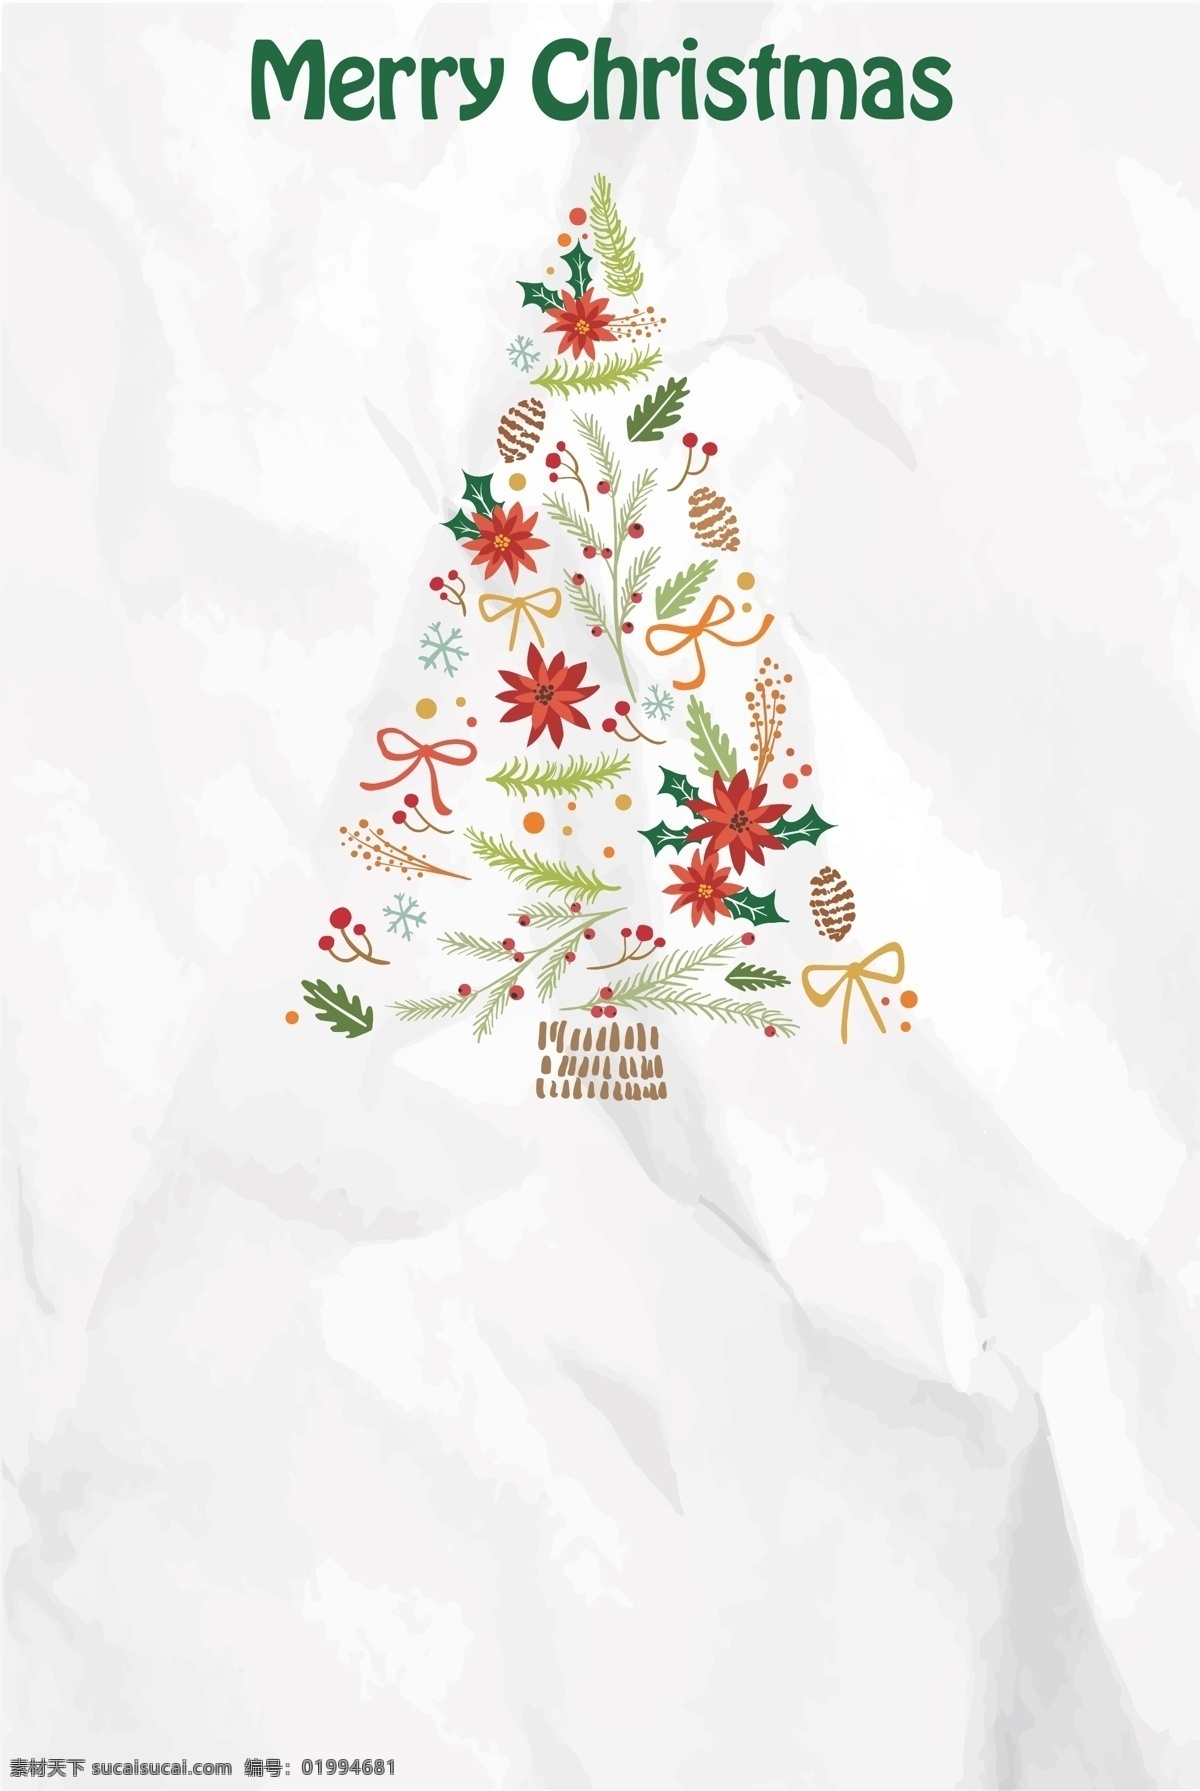 褶皱 纸张 上 圣诞树 插画 海报 背景 清新 矢量 开心 文艺 小清新 简约